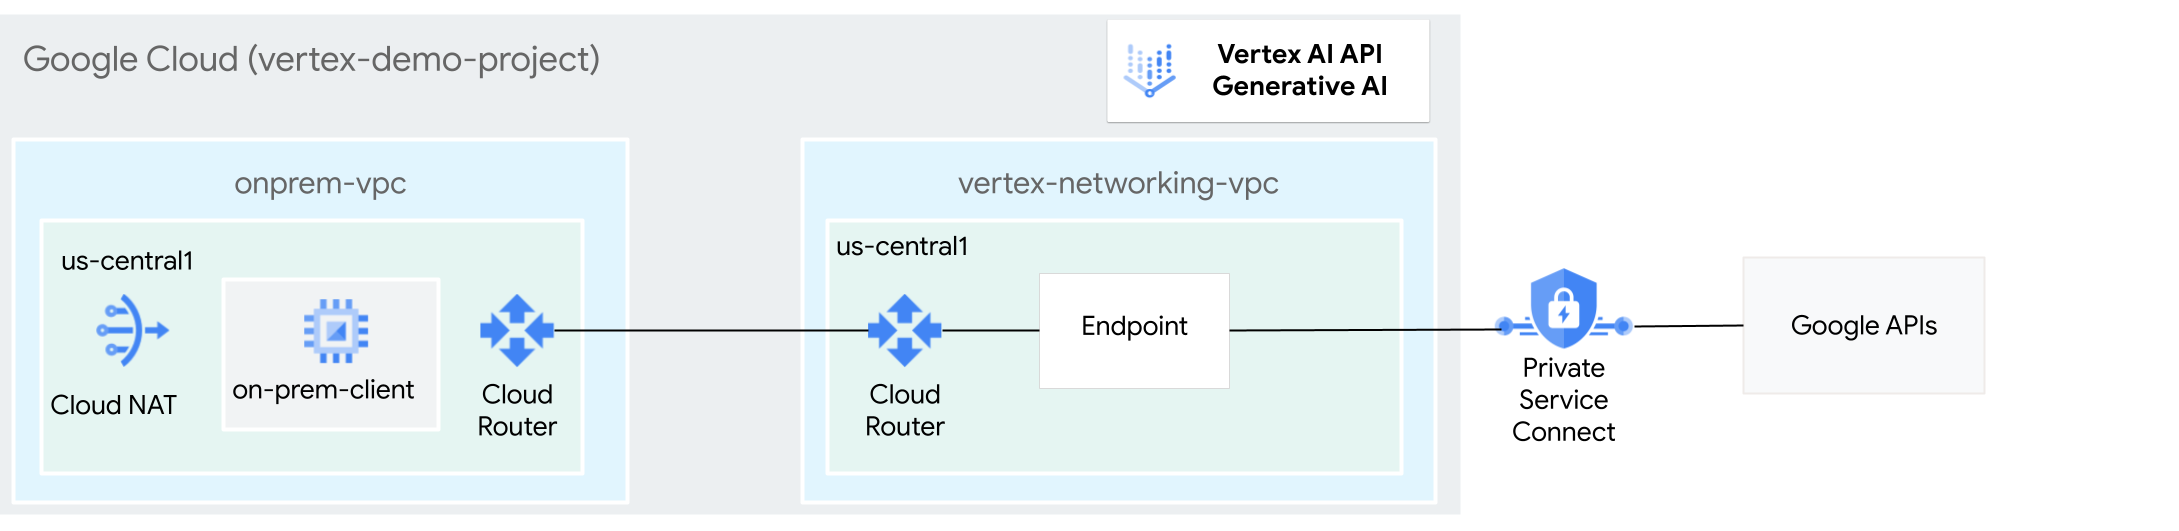 Diagrama de arquitetura do uso do Private Service Connect para acessar a IA generativa na Vertex AI.